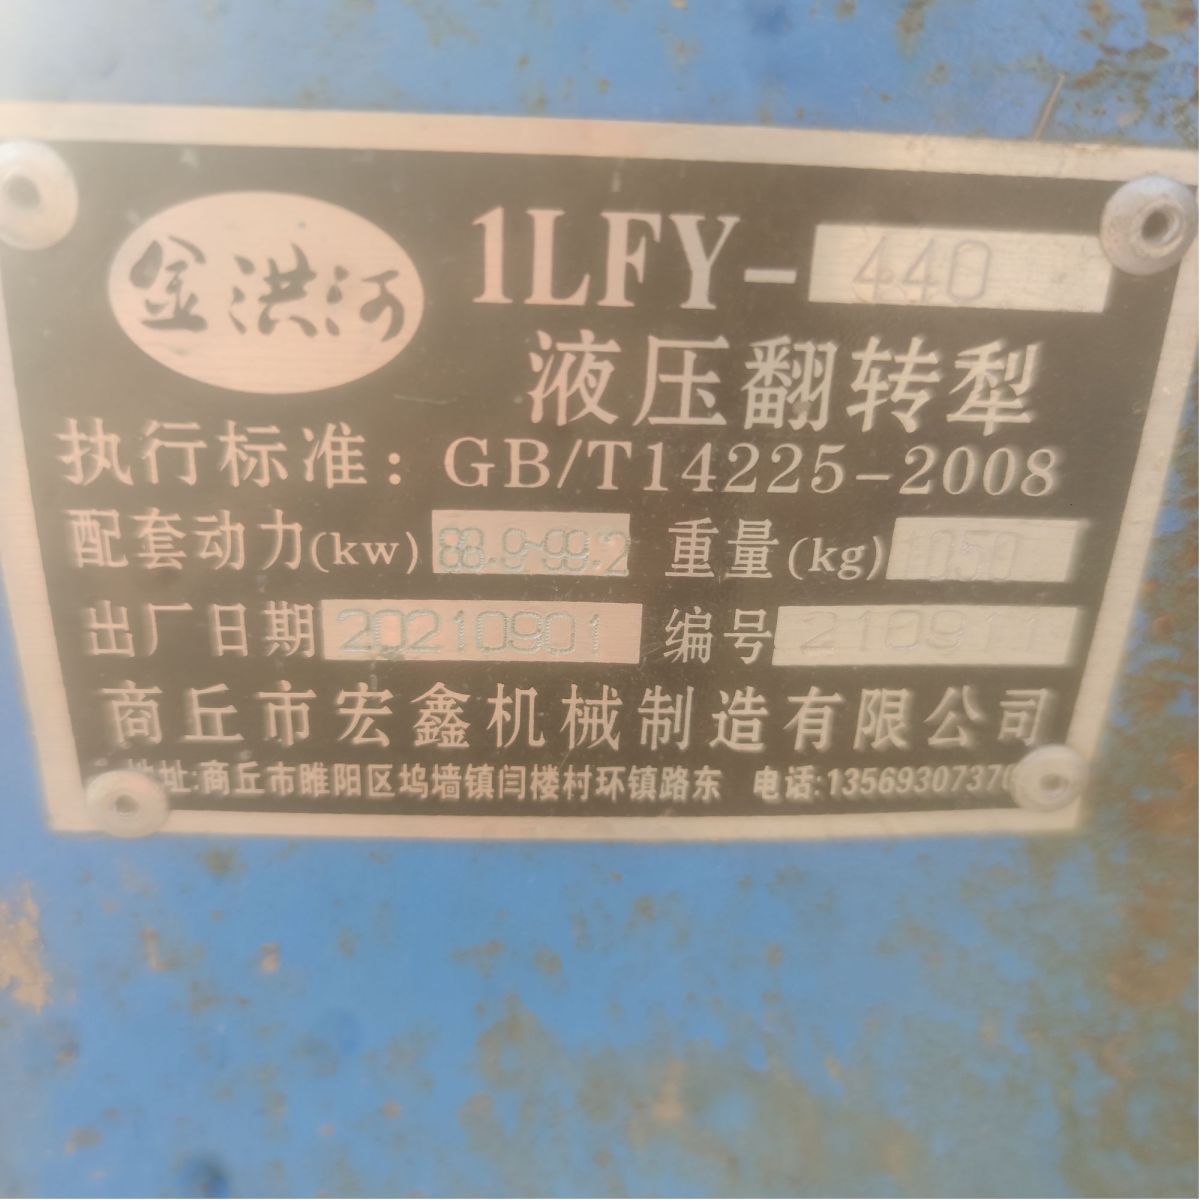 商丘宏鑫1LFY-440液压翻转犁